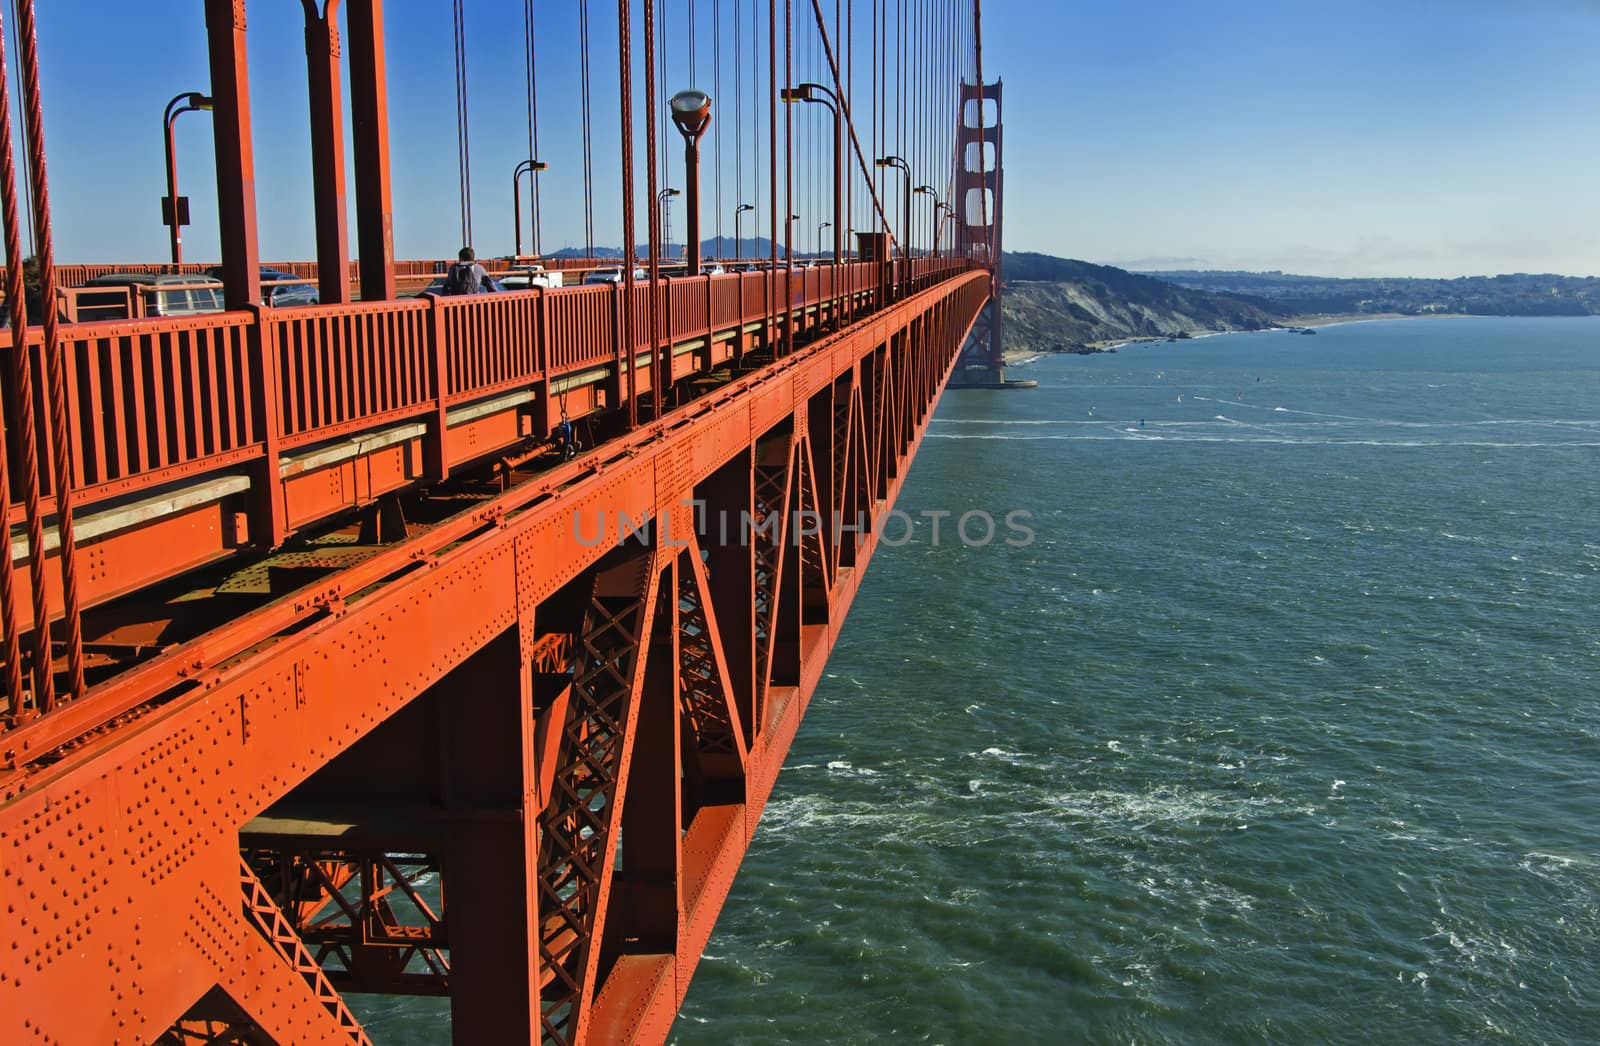 Golden Gate Bridge in San Francisco, California, US